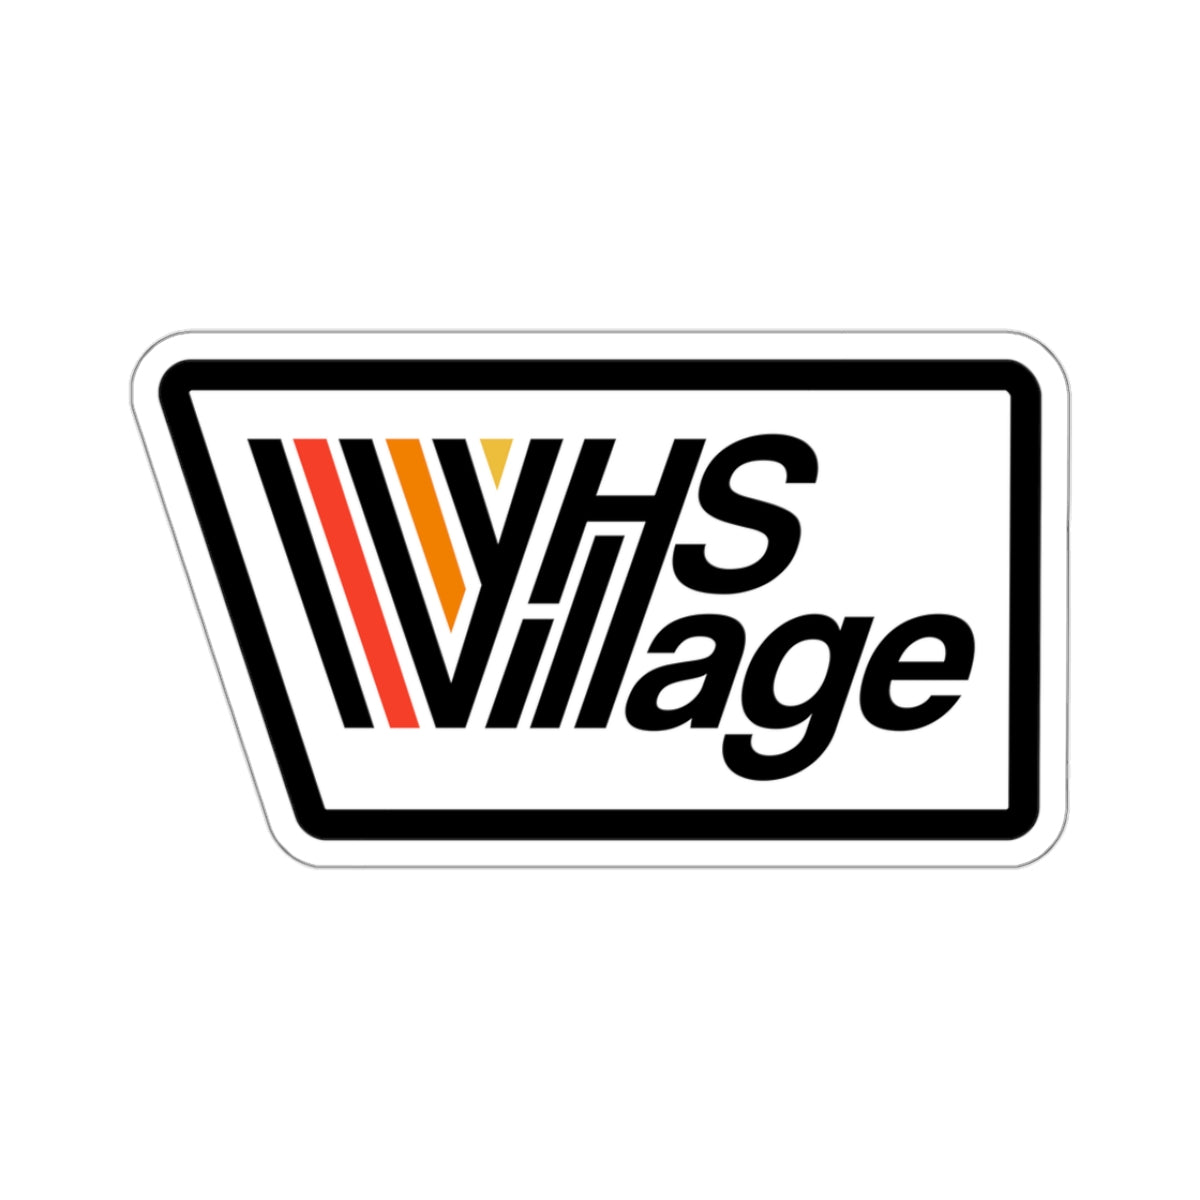 VHS Village Logo Stickers